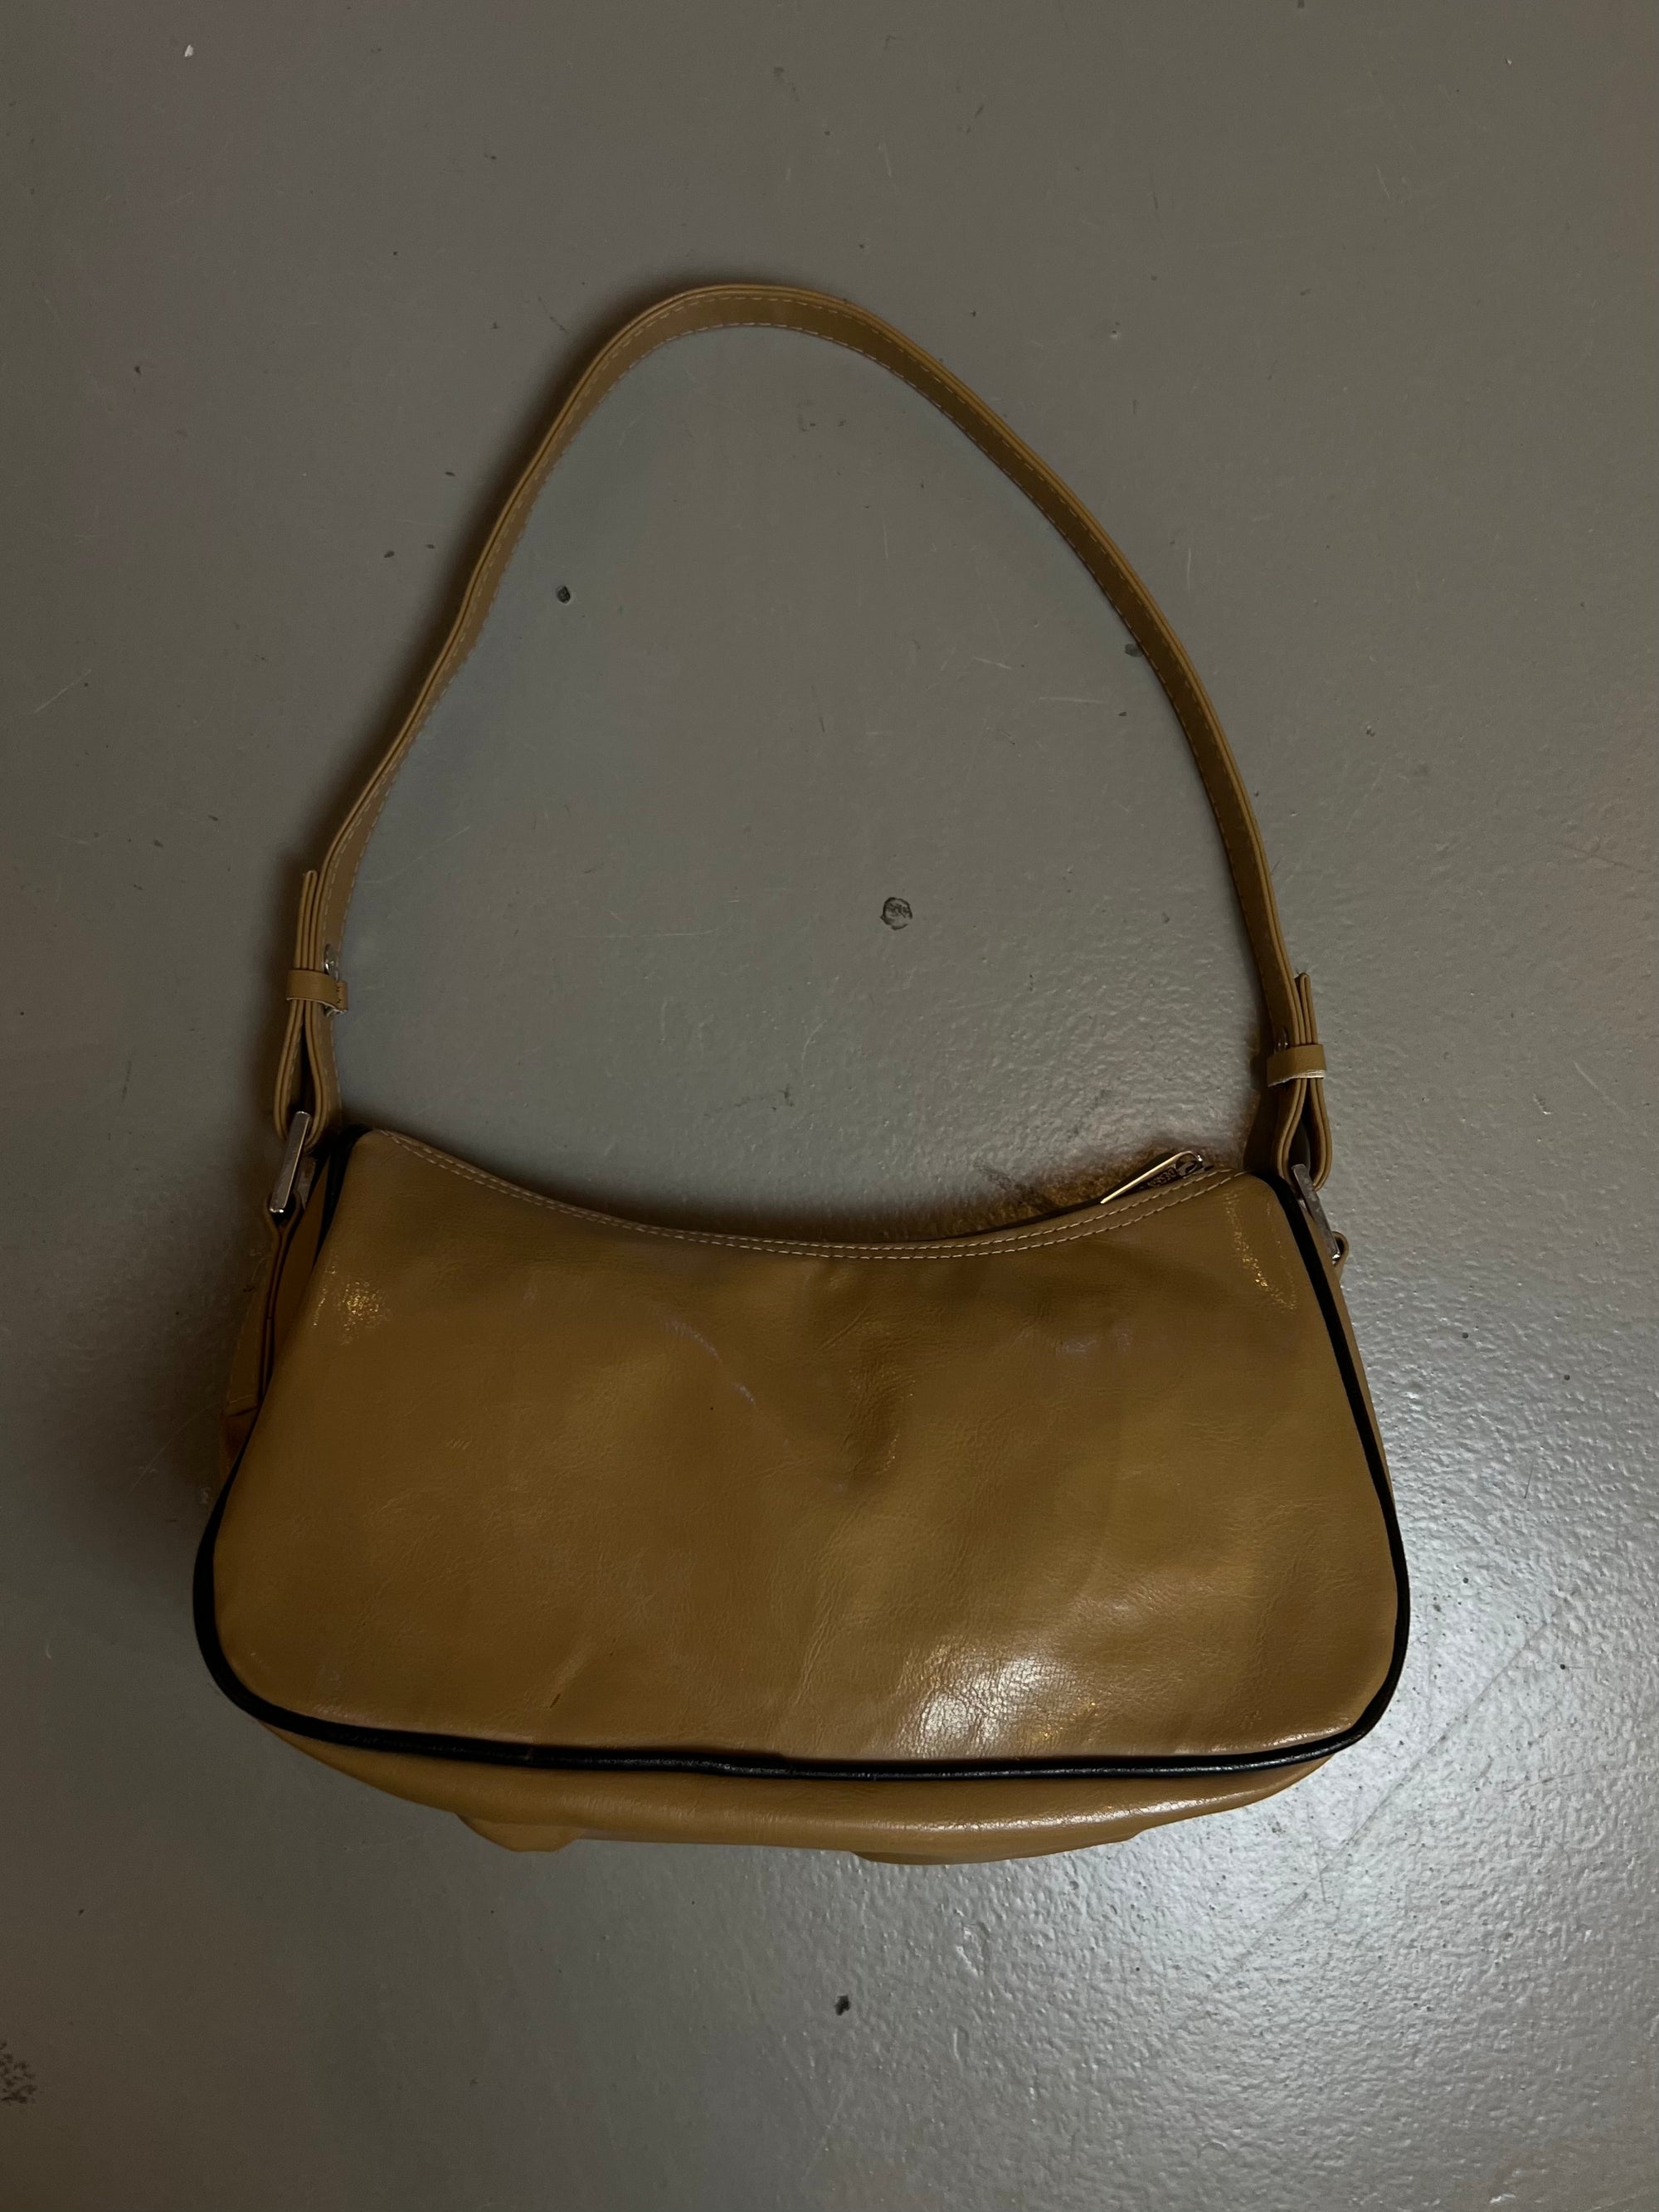 Produkt Bild der Vintage Beige Leather Bag von hinten